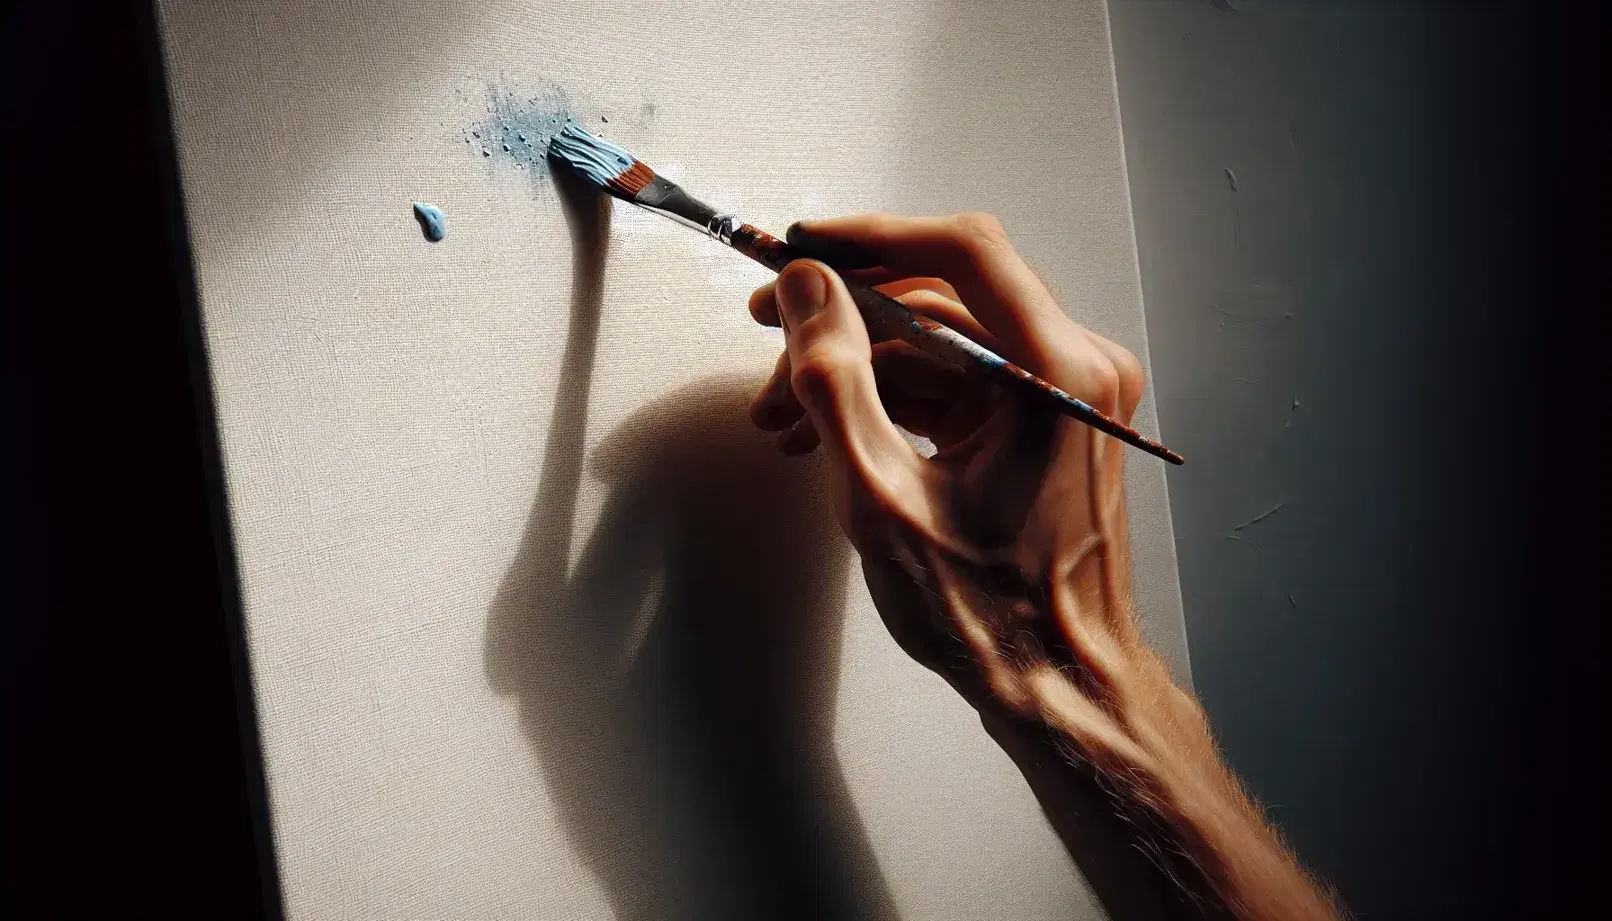 Mano sosteniendo un pincel con pintura azul iniciando una pincelada en un lienzo en blanco, destacando la textura y la iluminación suave.